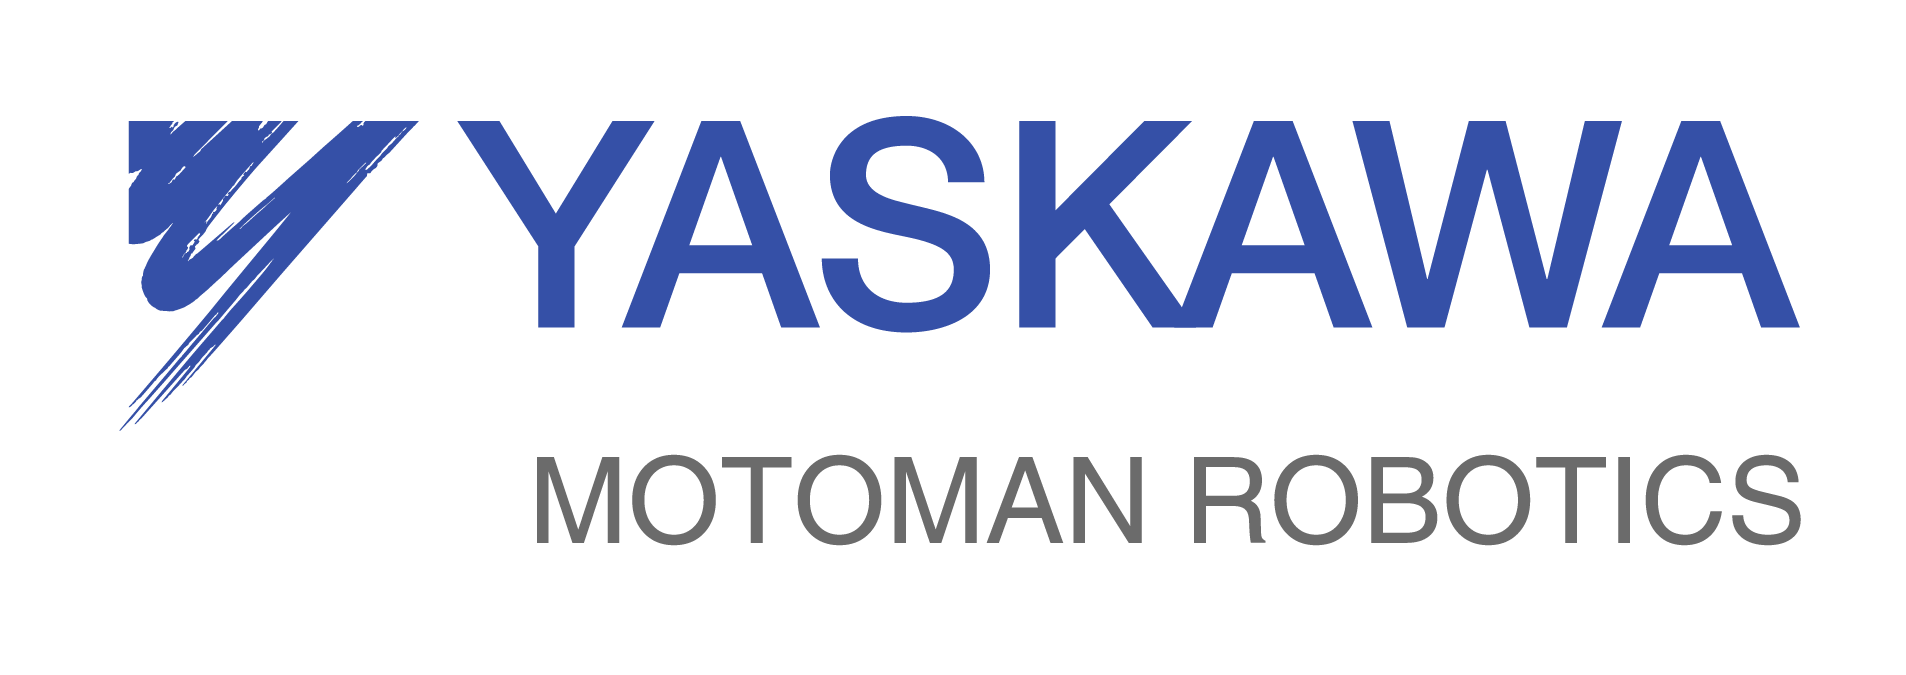 Motoman Logo - Collaborative Work by Yaskawa/Motoman: FSU